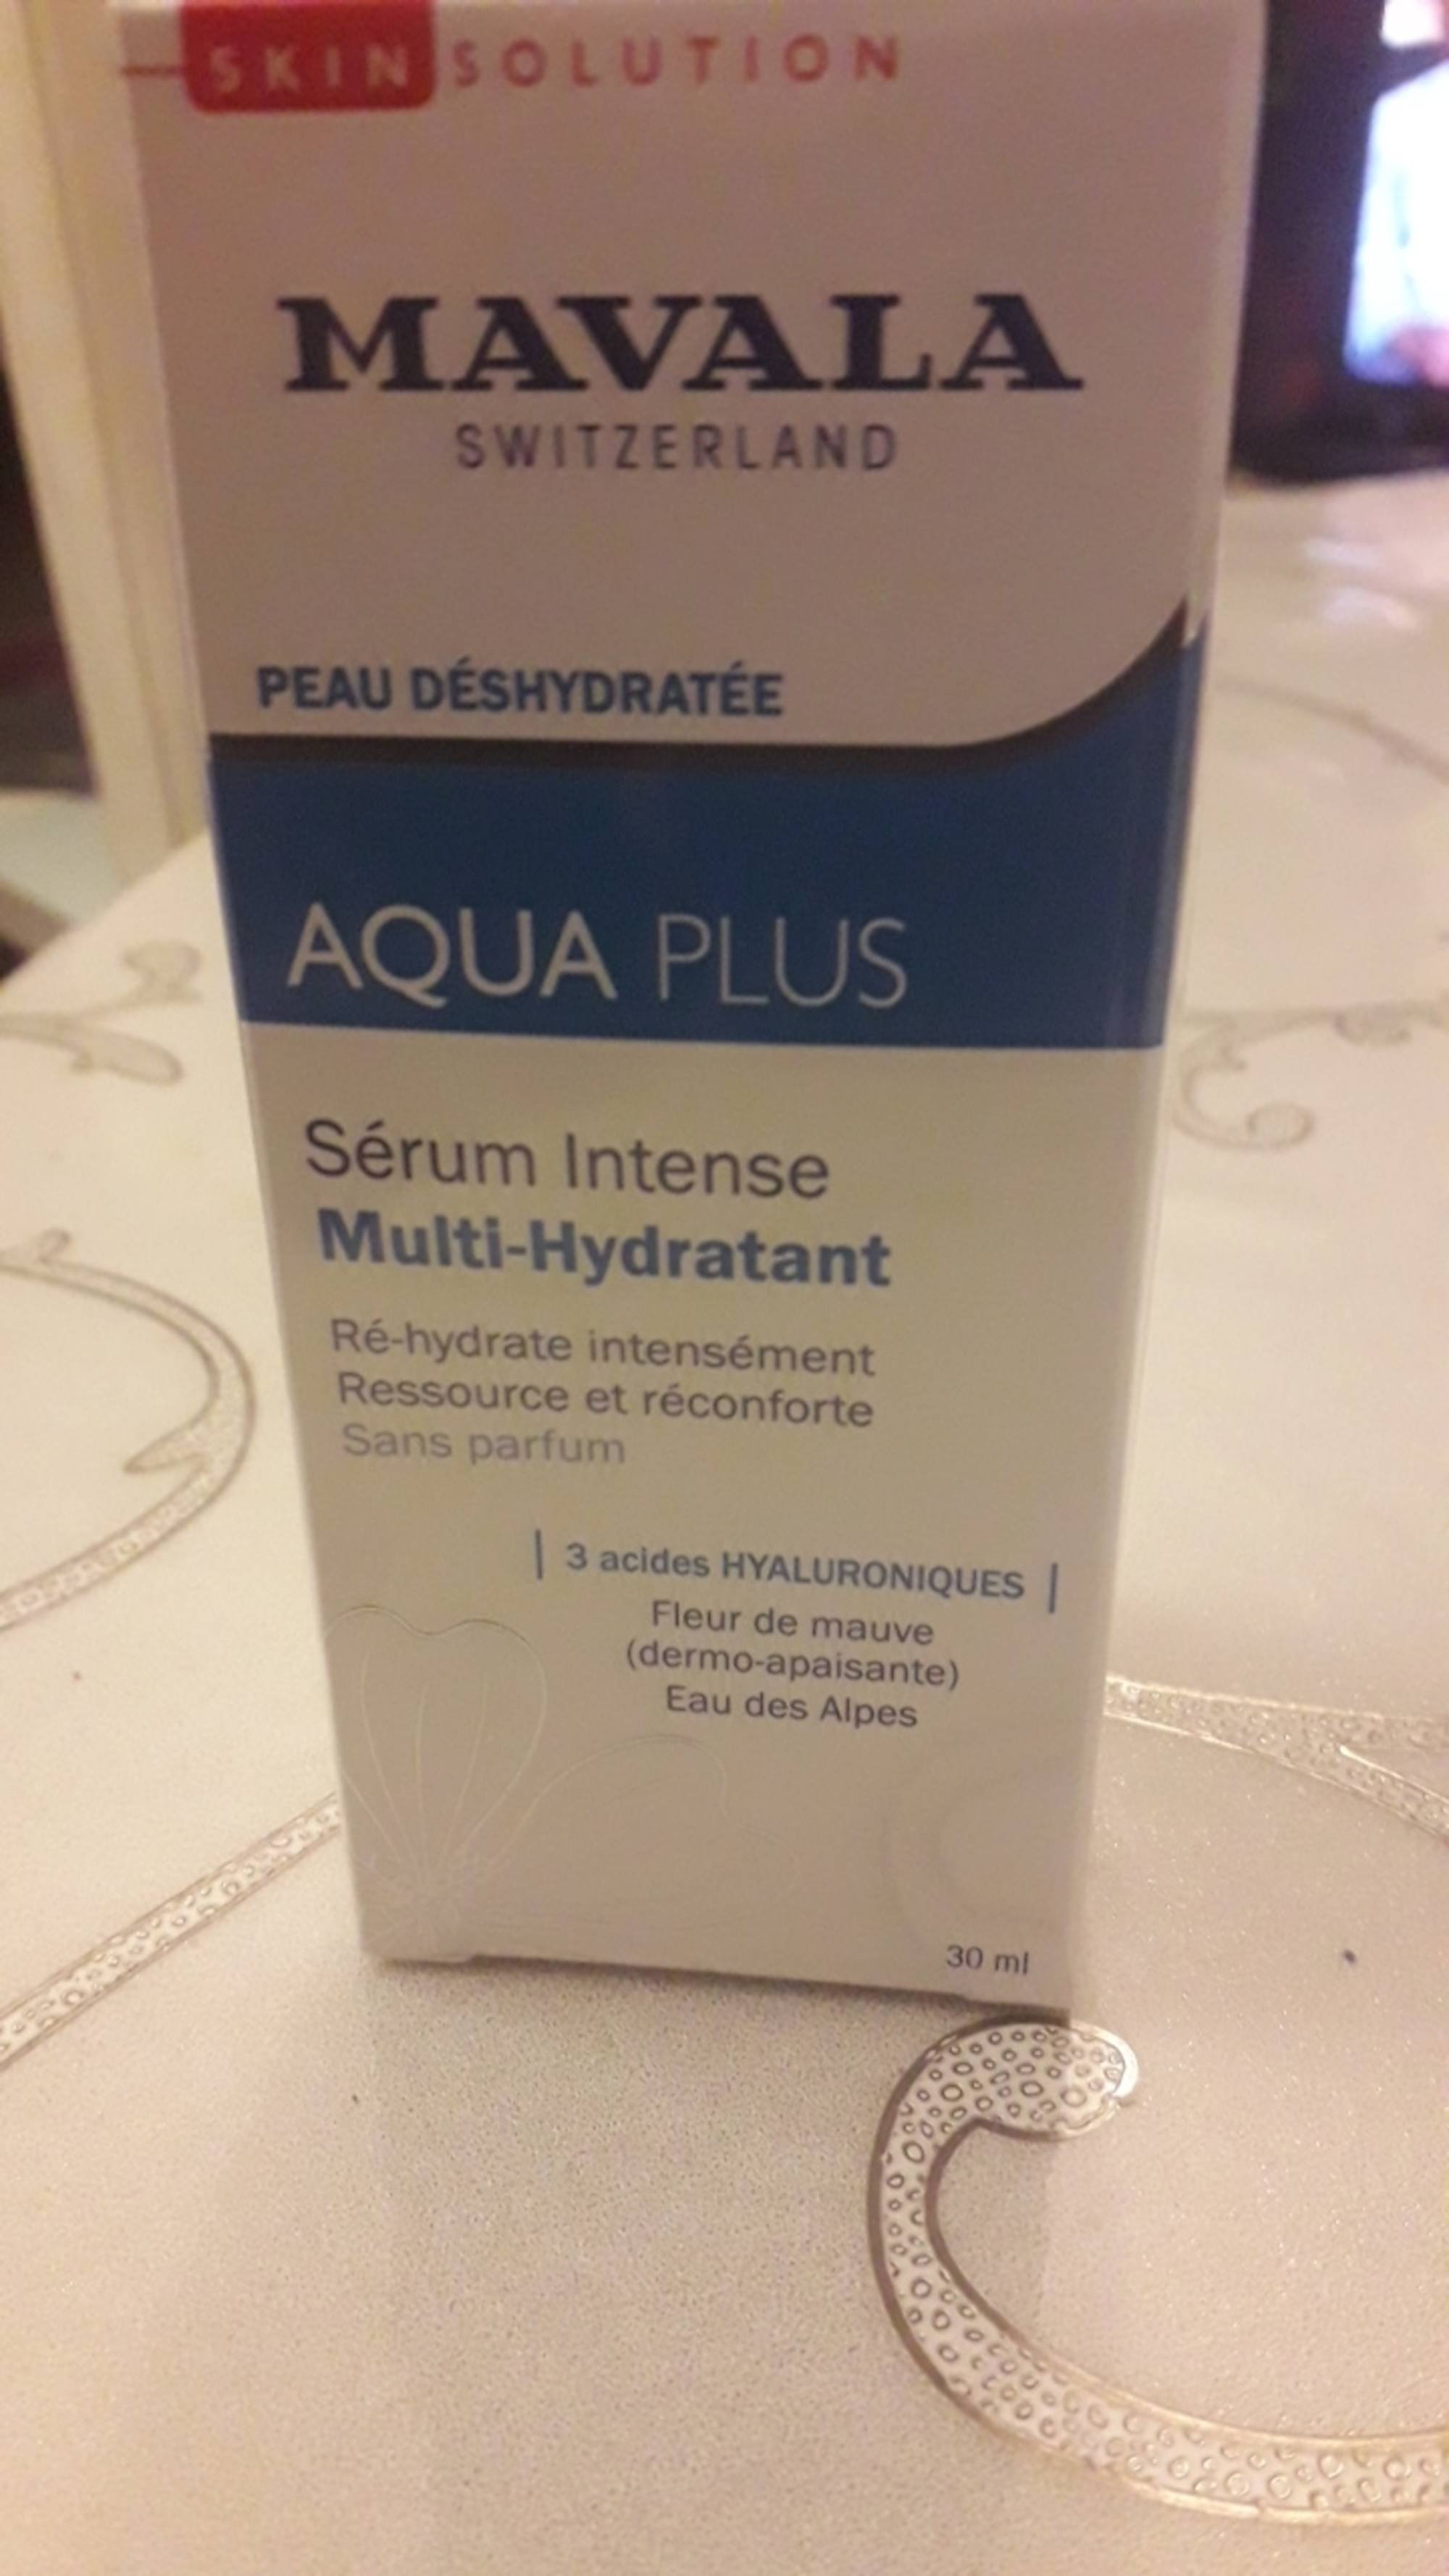 MAVALA - Aqua plus - Sérum intense multi-hydratant